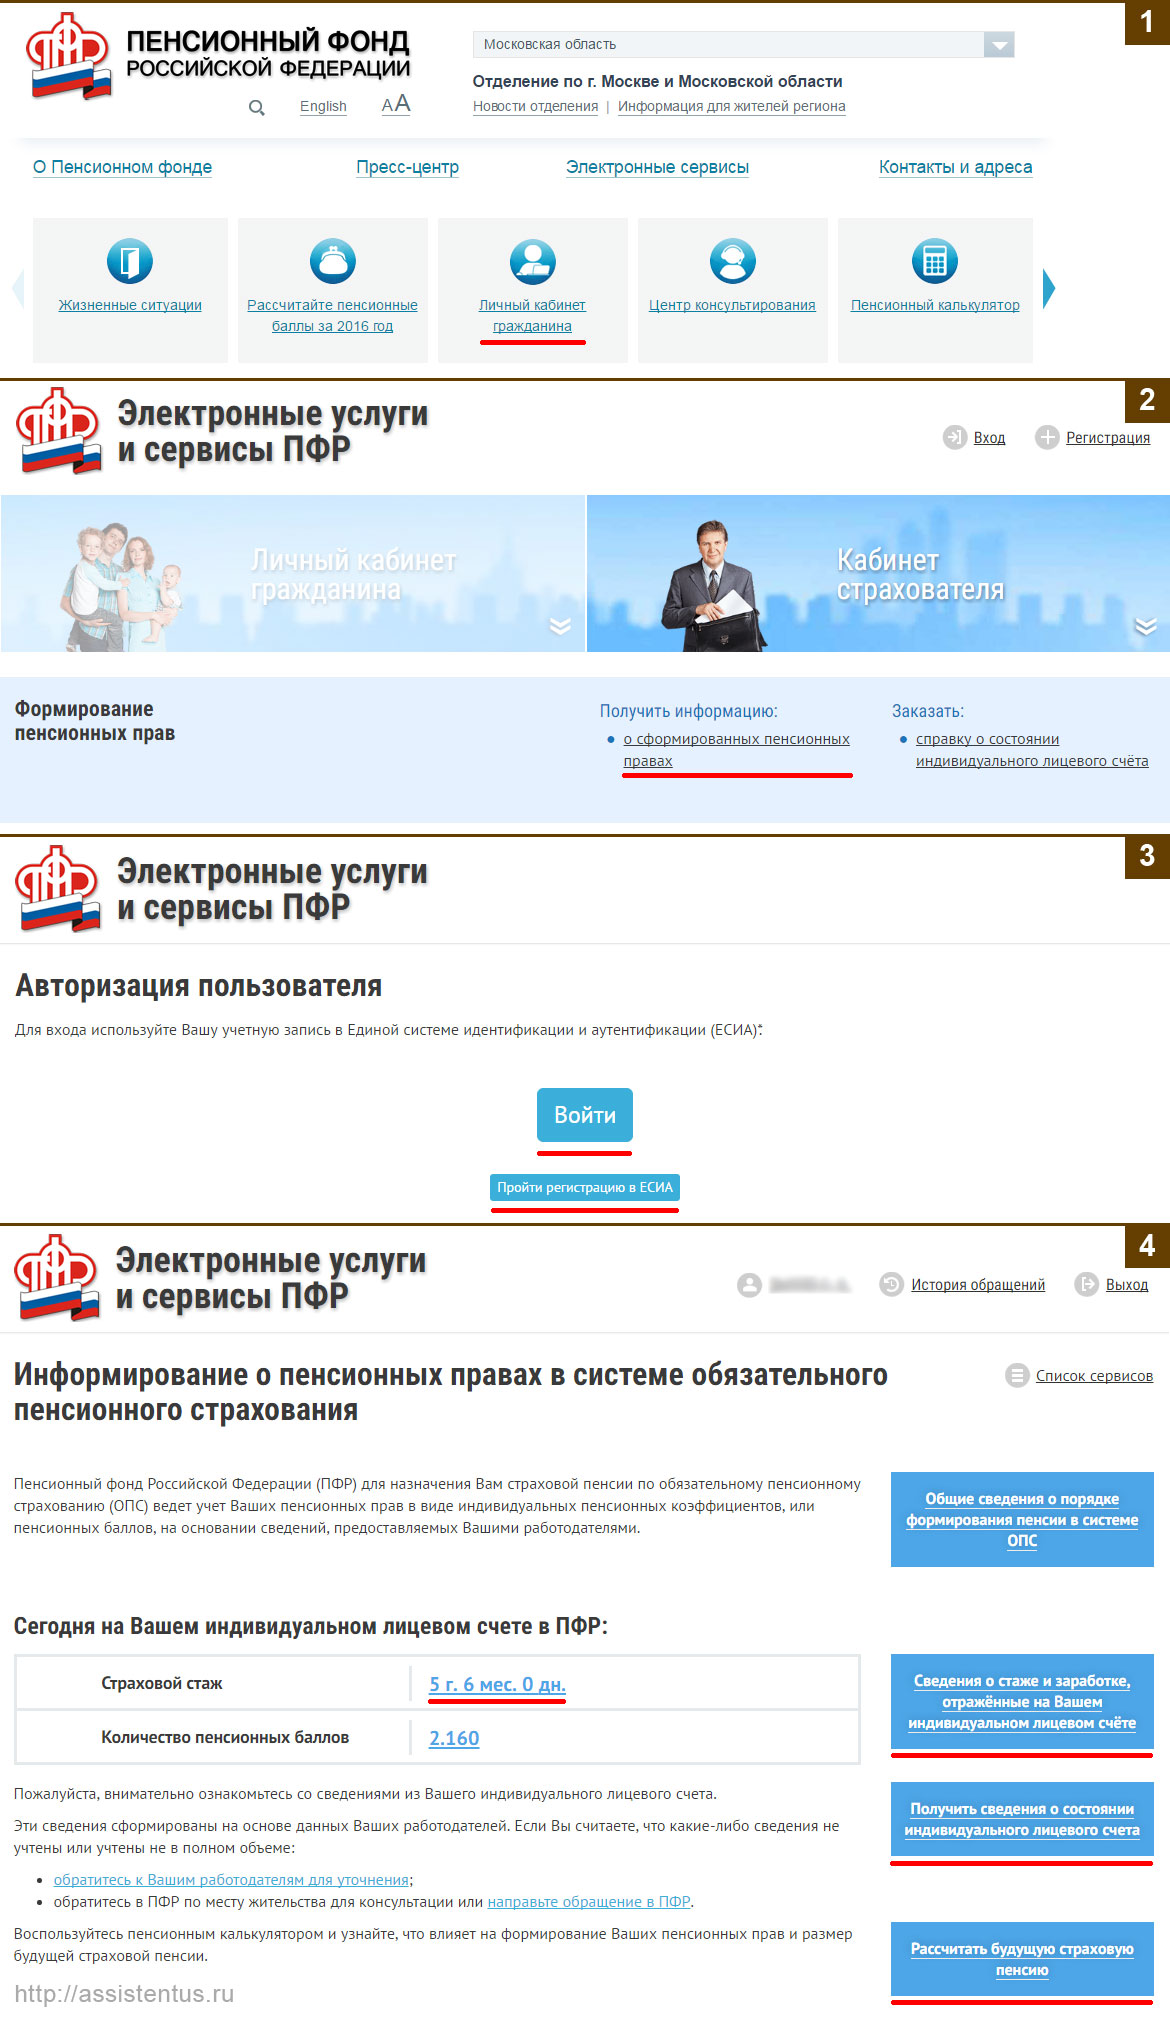 Инструкция по проверке пенсионных накоплений через сайт Пенсионного Фонда РФ